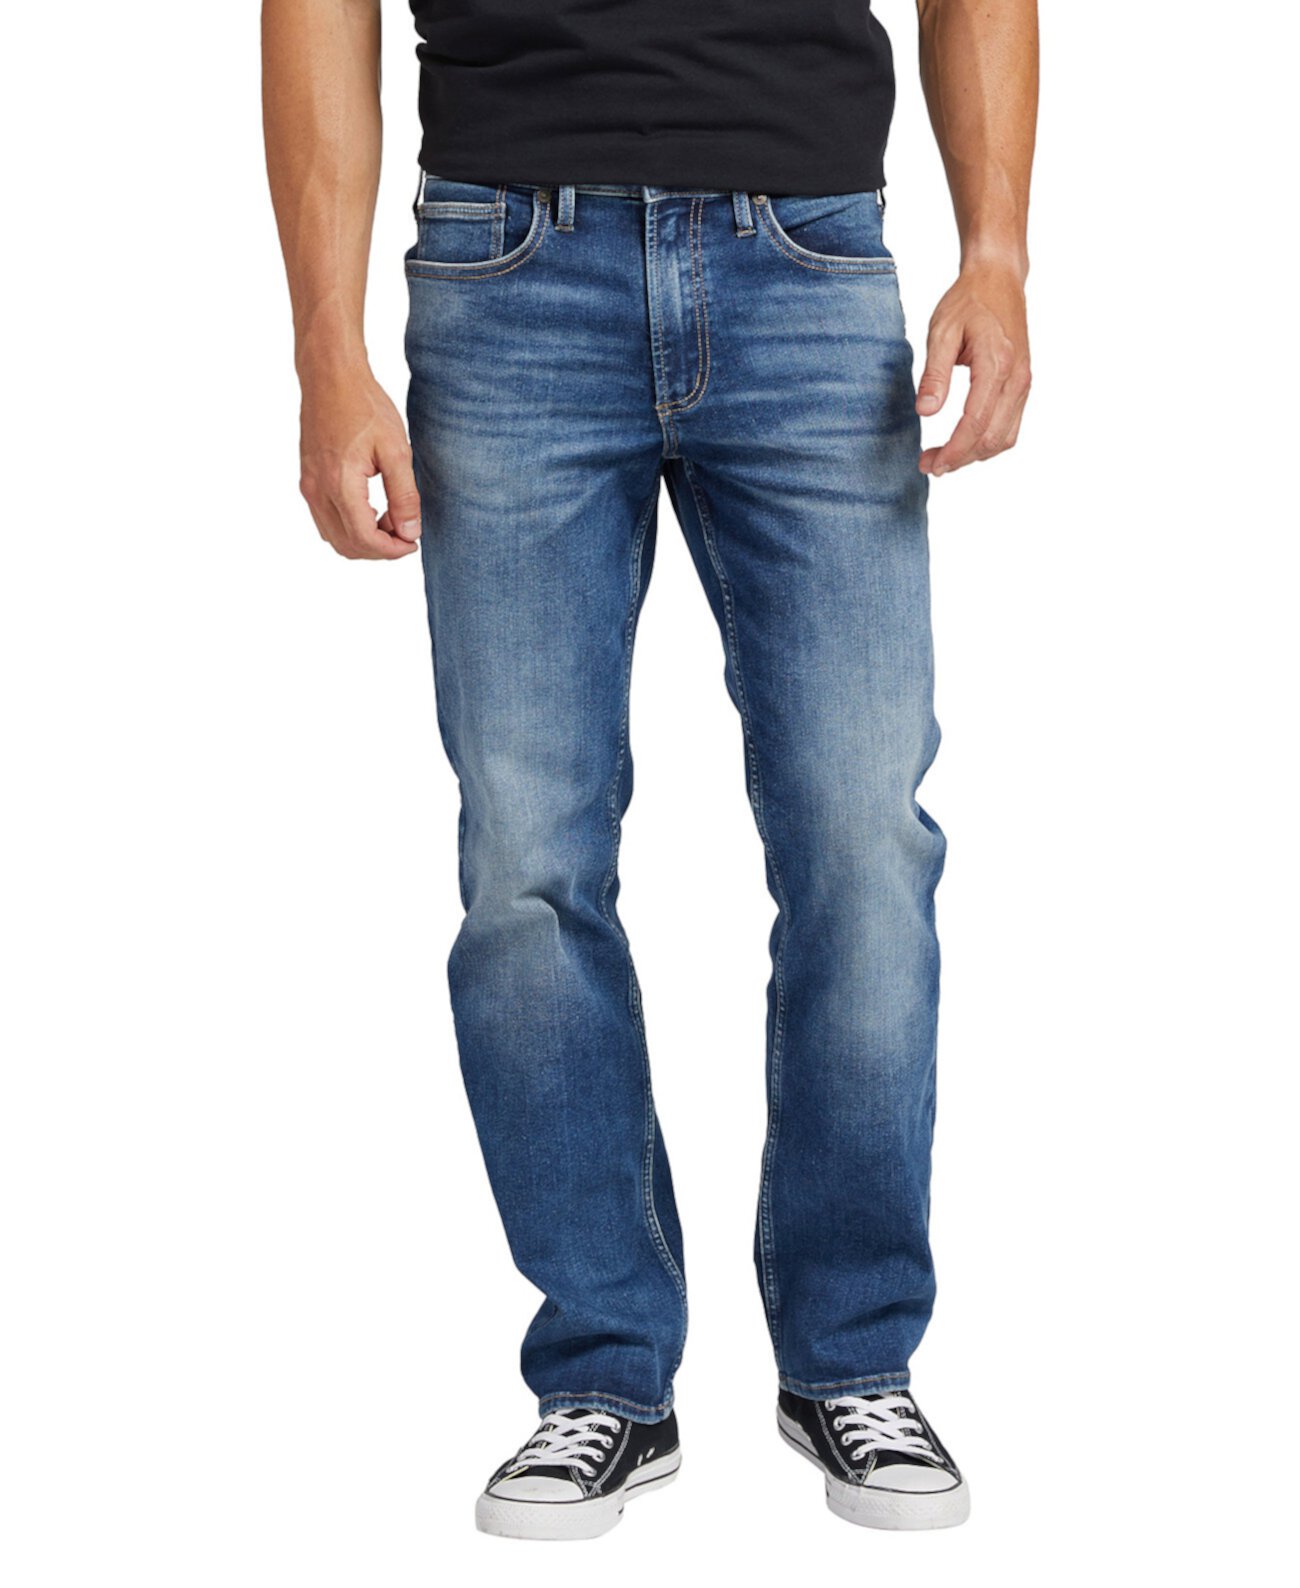 Мужские джинсы Infinite Fit свободного кроя прямого кроя Silver Jeans Co.